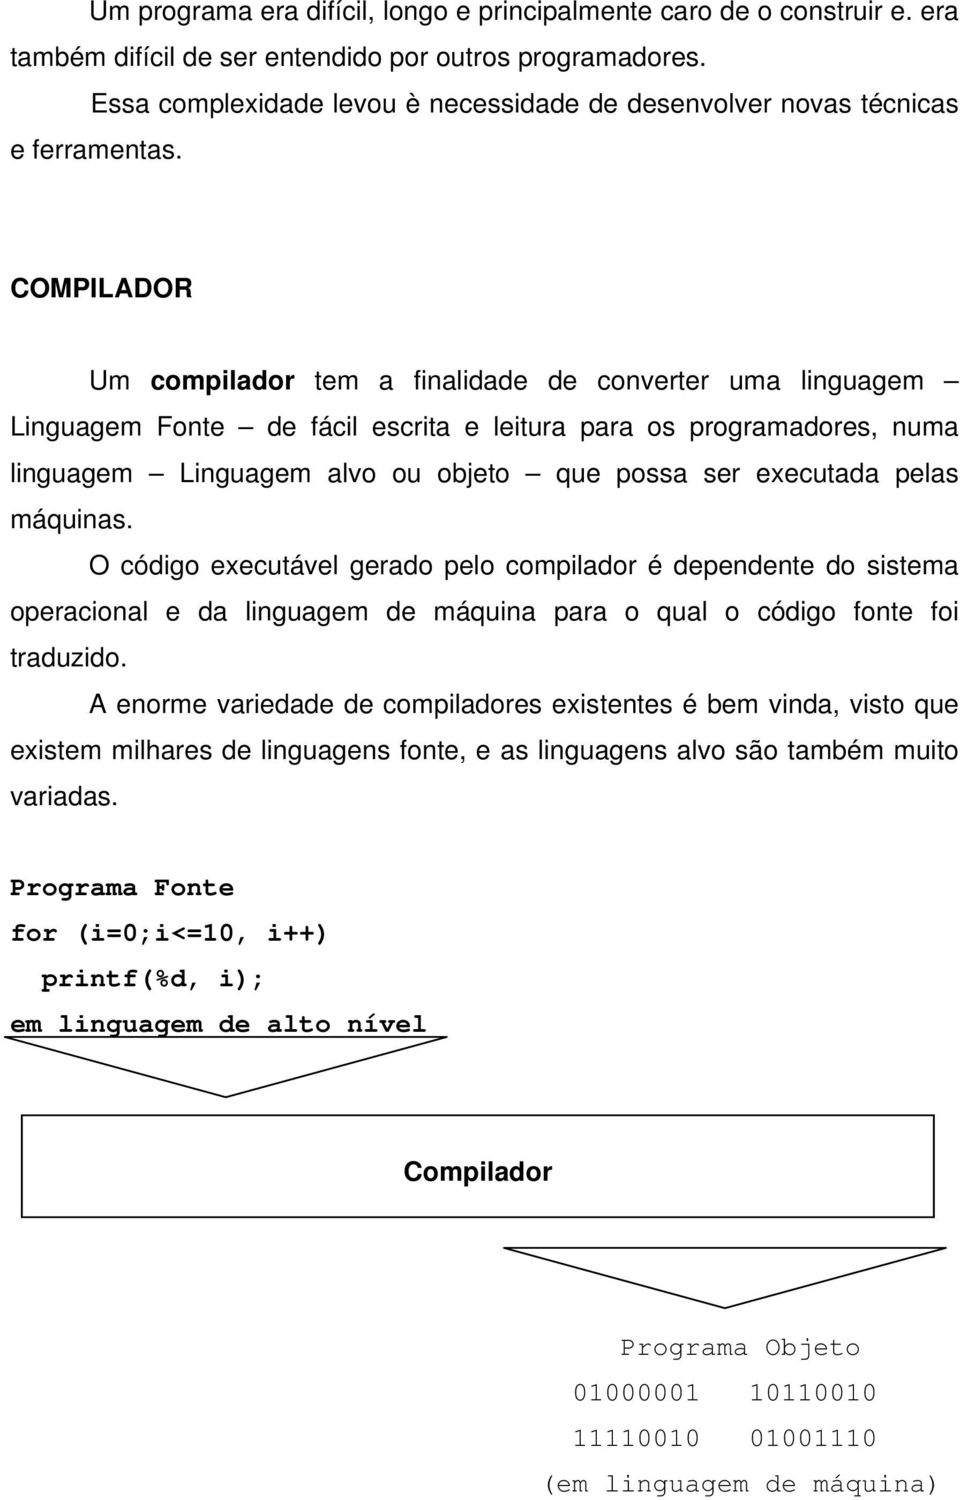 COMPILADOR Um compilador tem a finalidade de converter uma linguagem Linguagem Fonte de fácil escrita e leitura para os programadores, numa linguagem Linguagem alvo ou objeto que possa ser executada